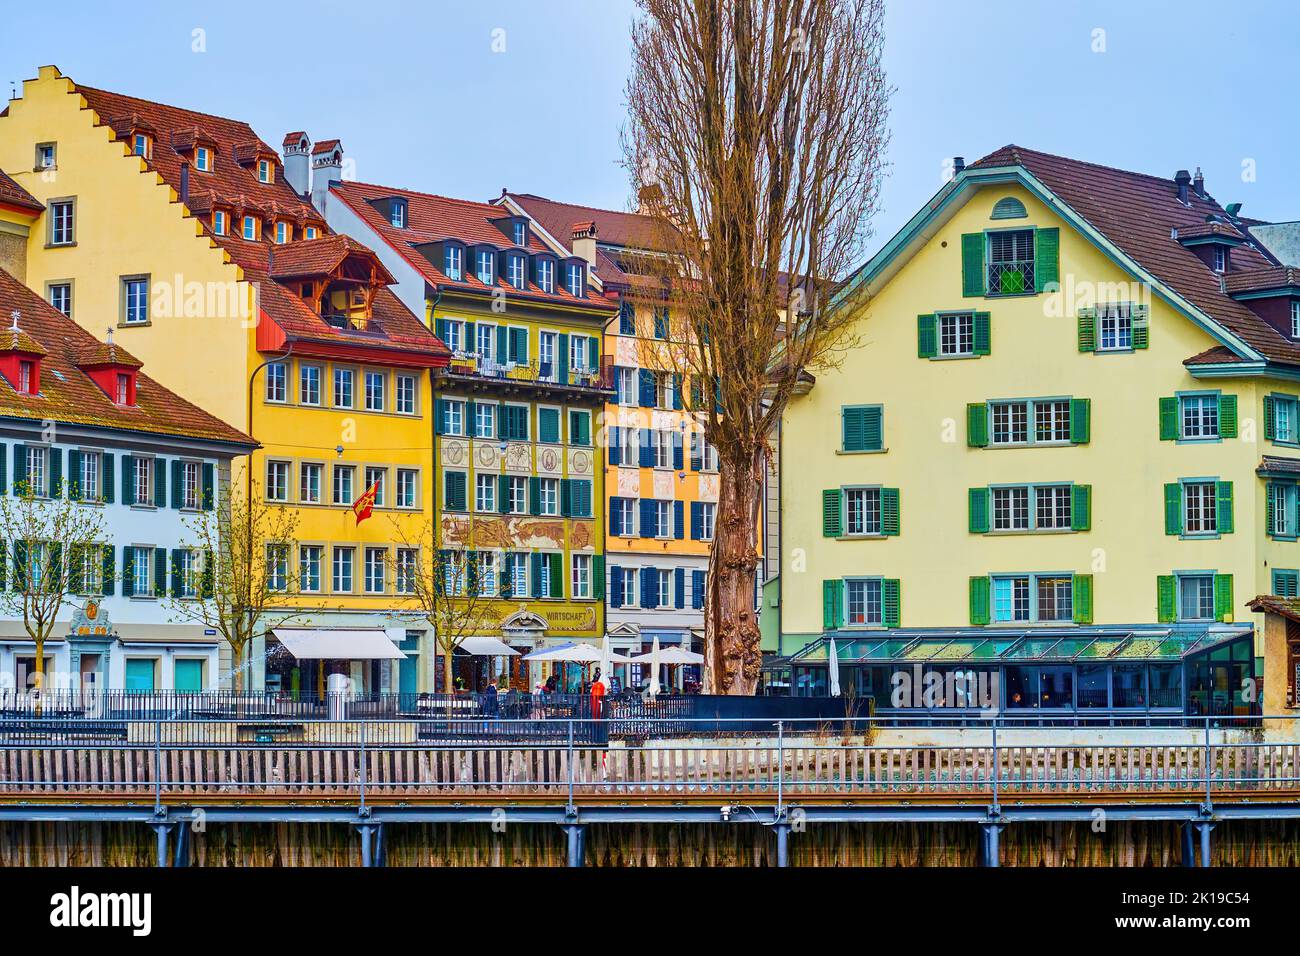 Case medievali panoramiche con persiane colorate e murales sulle facciate, Lucerna, Svizzera Foto Stock